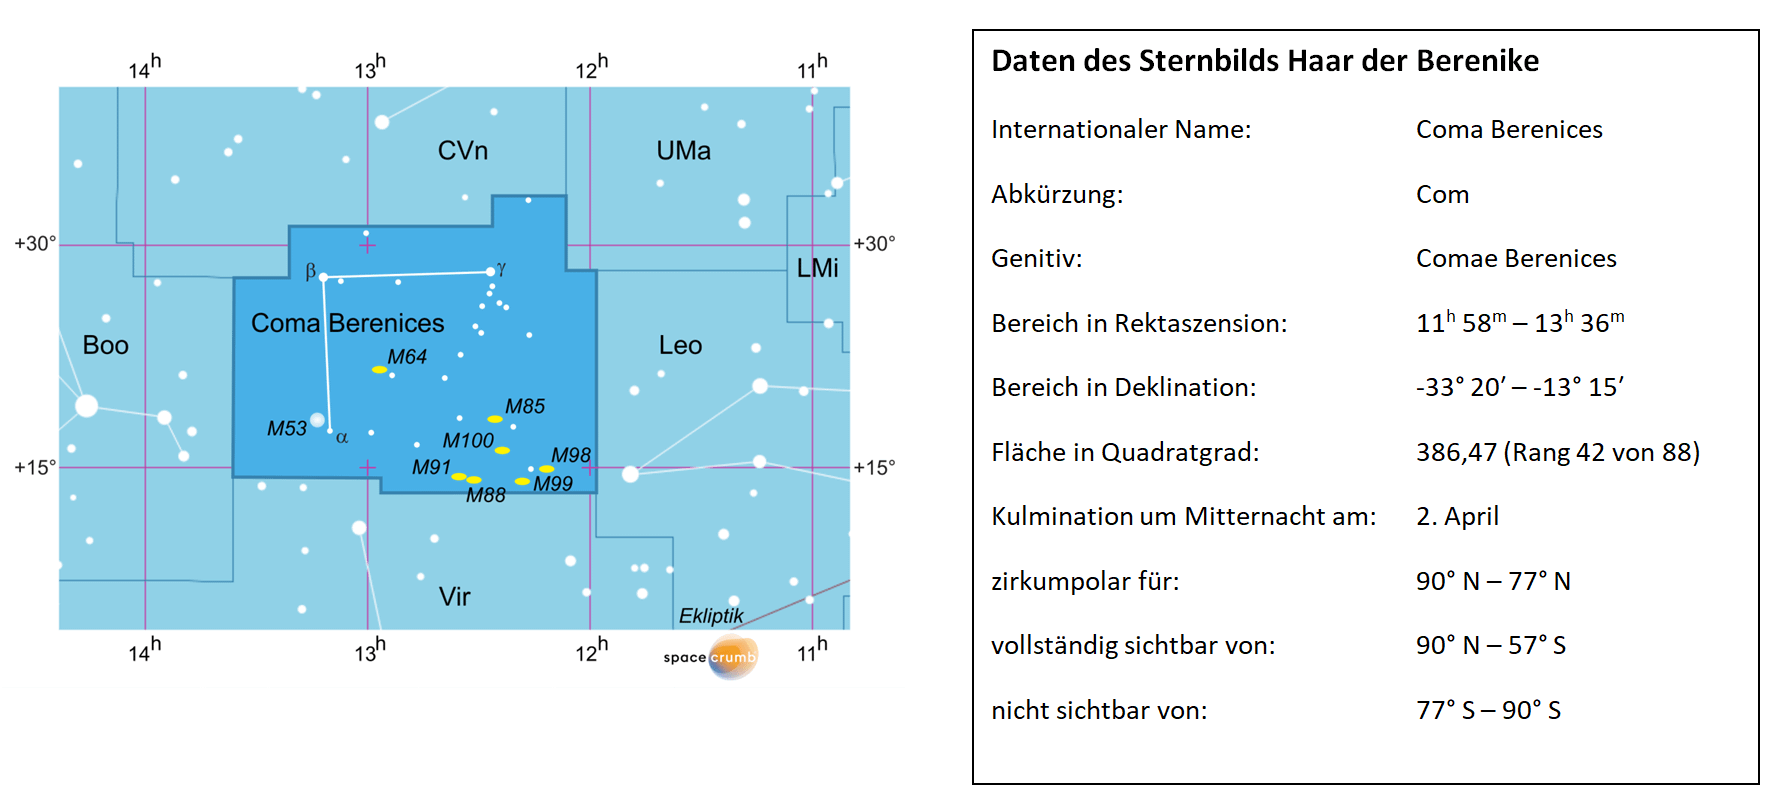 Links zeigt eine mit Koordinaten versehene Karte eines Himmelsausschnitts weiße Sterne auf hellblauem Hintergrund. Die Fläche, die das Sternbild Haar der Berenike einnimmt, ist dunkelblau hervorgehoben. Eine Tabelle rechts gibt wichtige Daten des Sternbilds an.